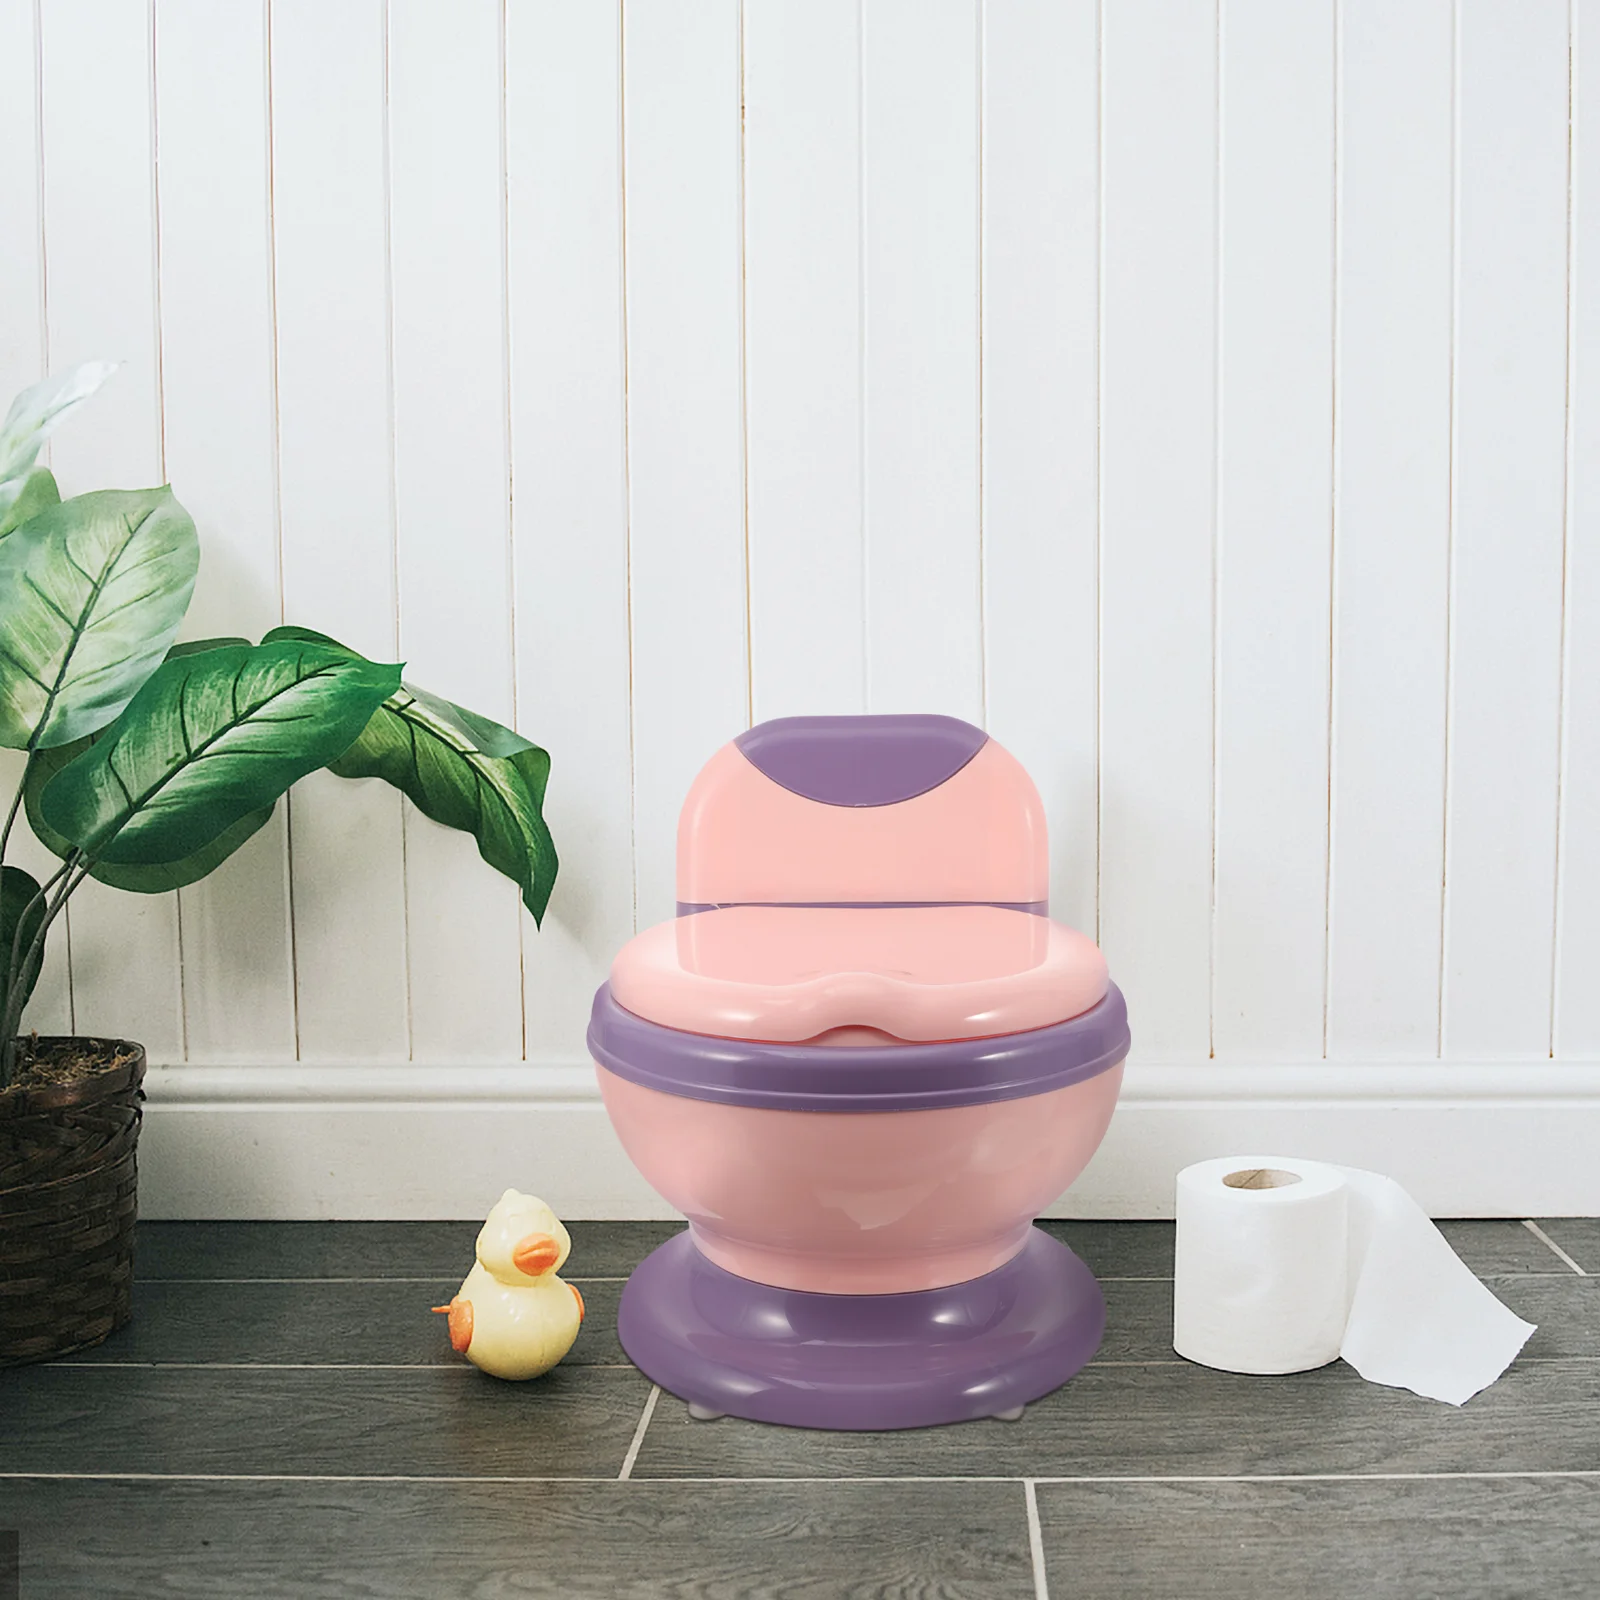 

Портативный горшок для малышей путешествия детский Туалет Обучение реалистичные детские предметы для новорожденных